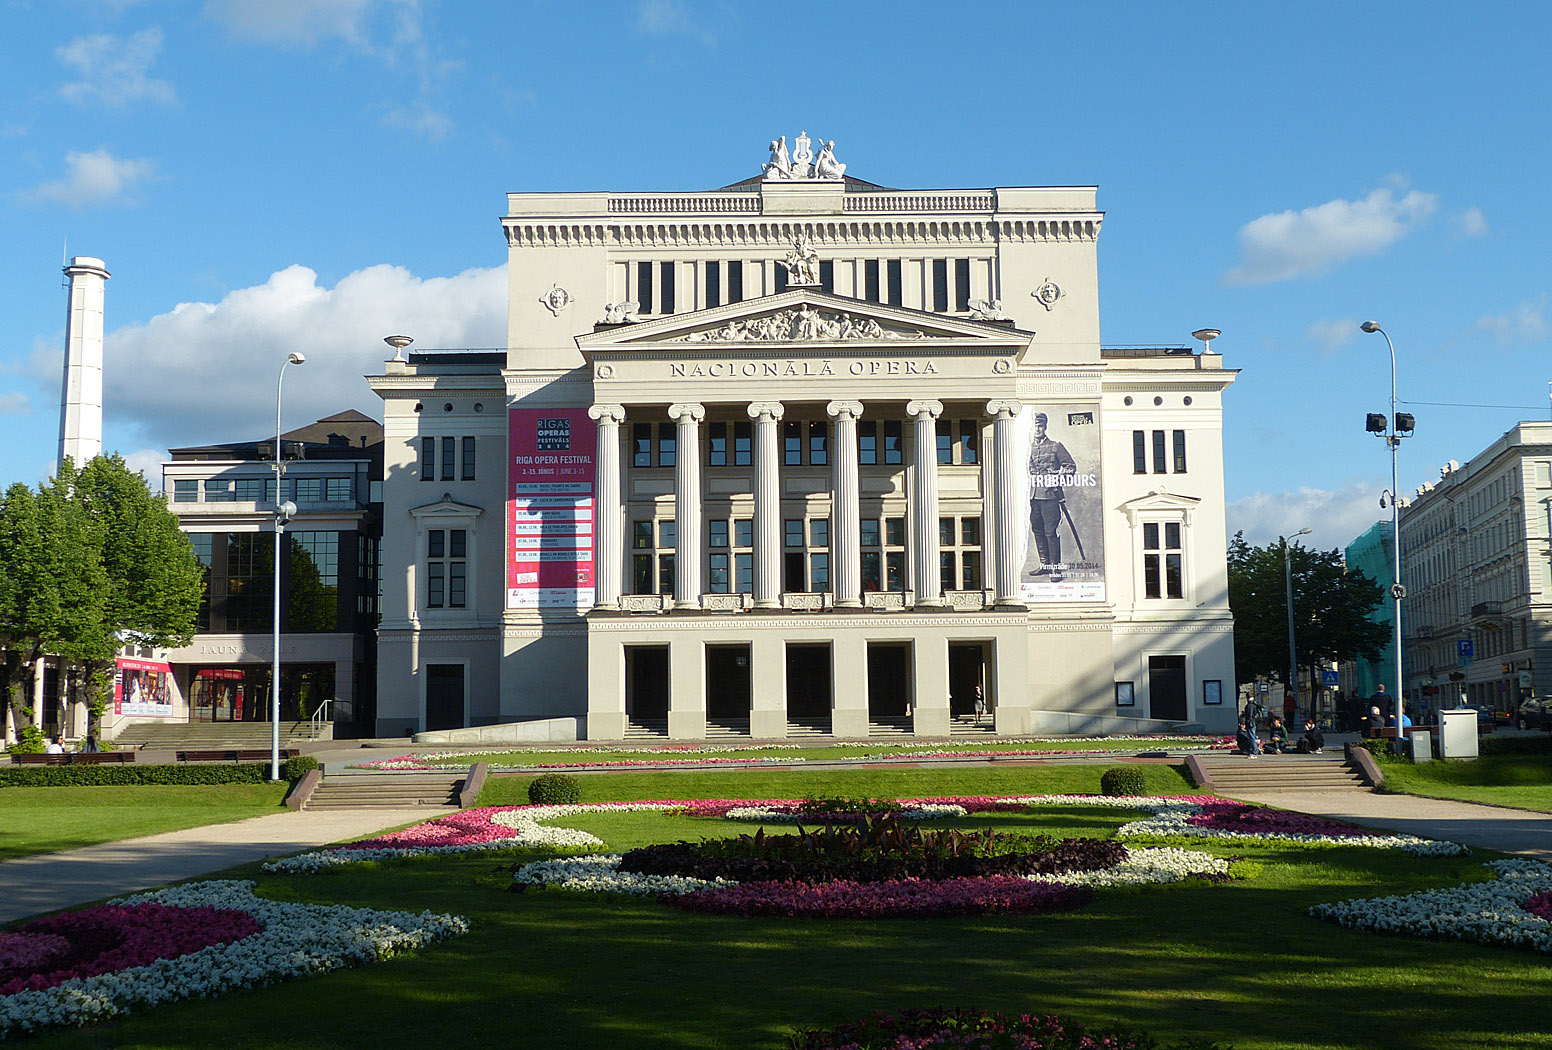 National Opera, Riga, Latvia